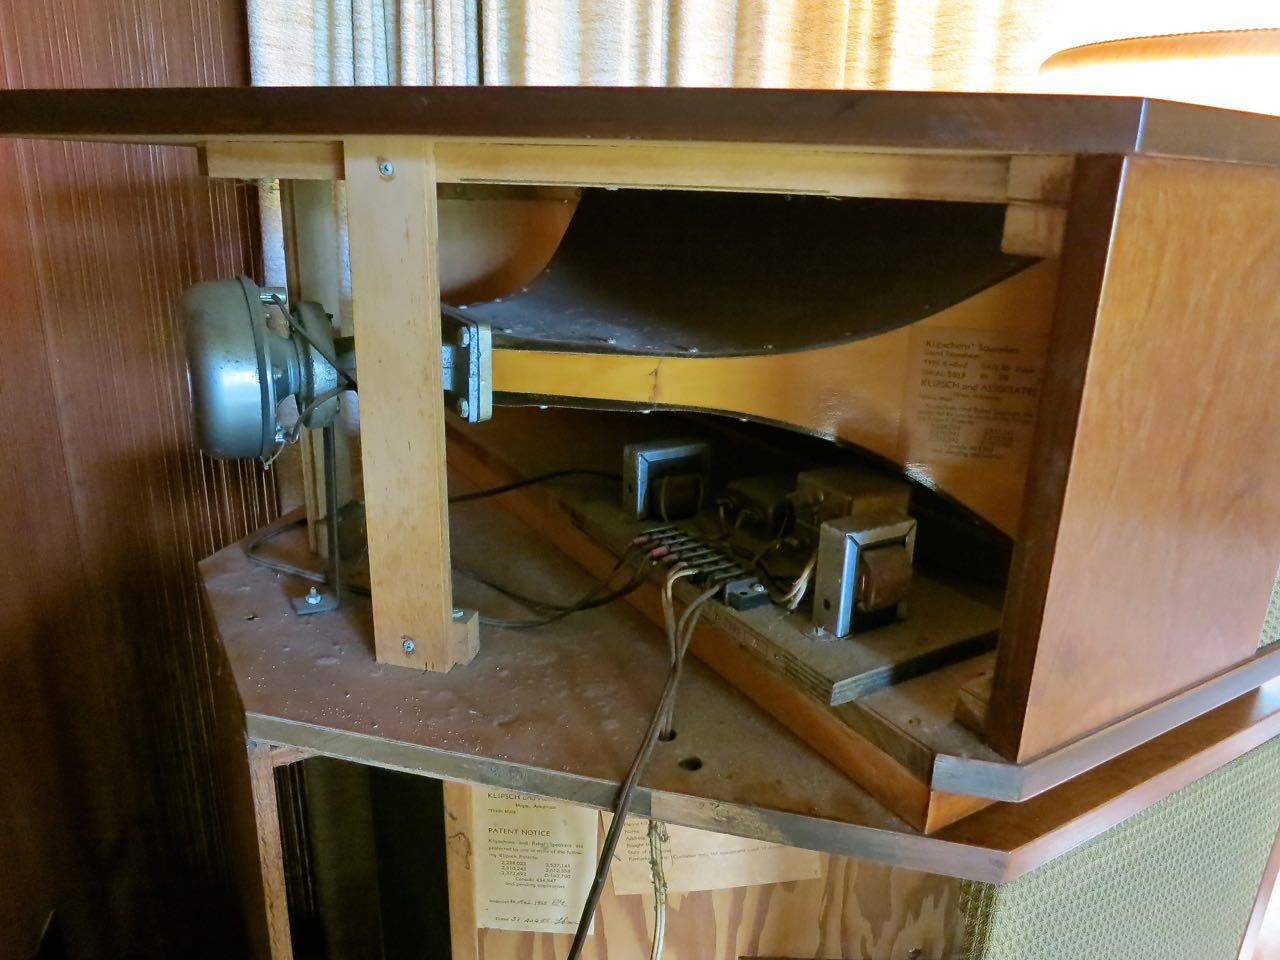 1955 K-357 Klipschorn Floor Standing Corner Speaker